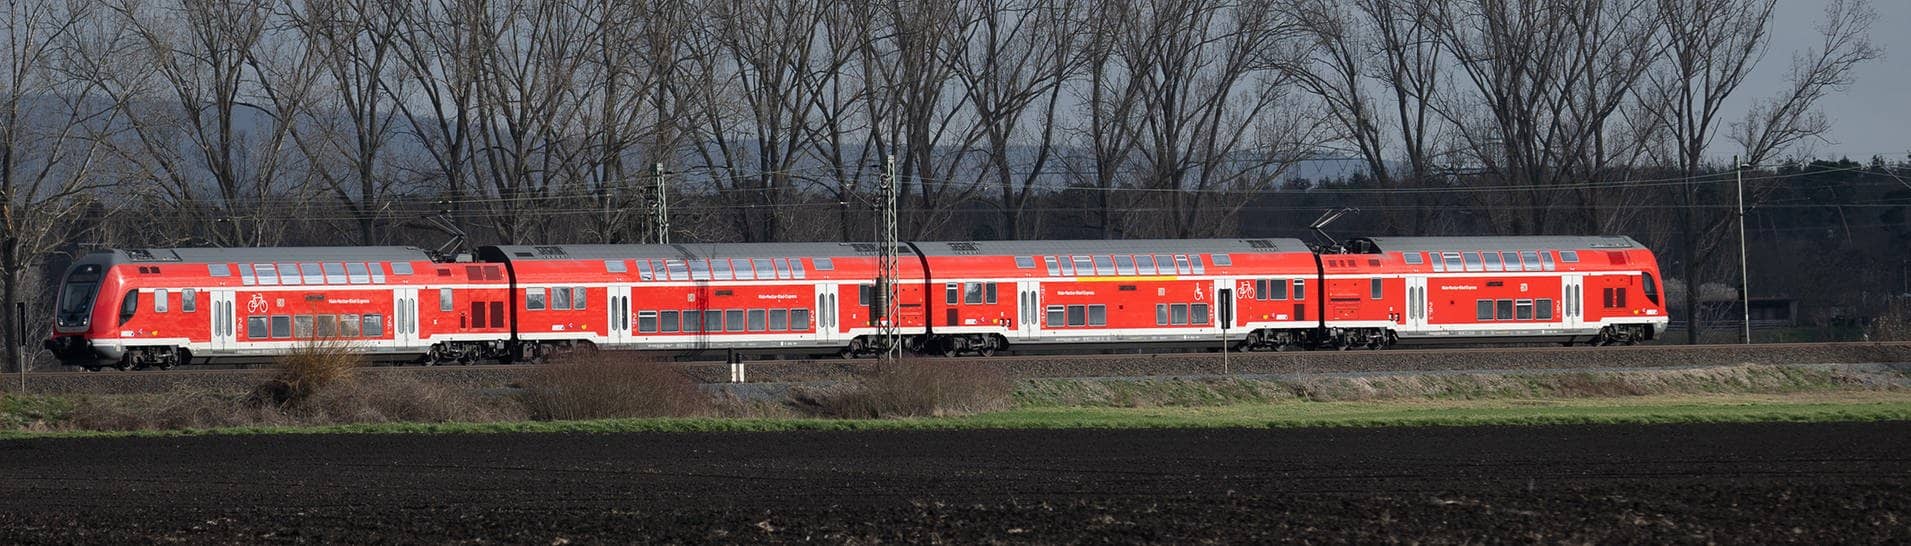 Ein Regional-Express fährt auf der Riedbahn genannten Bahnstrecke Mannheim-Frankfurt.